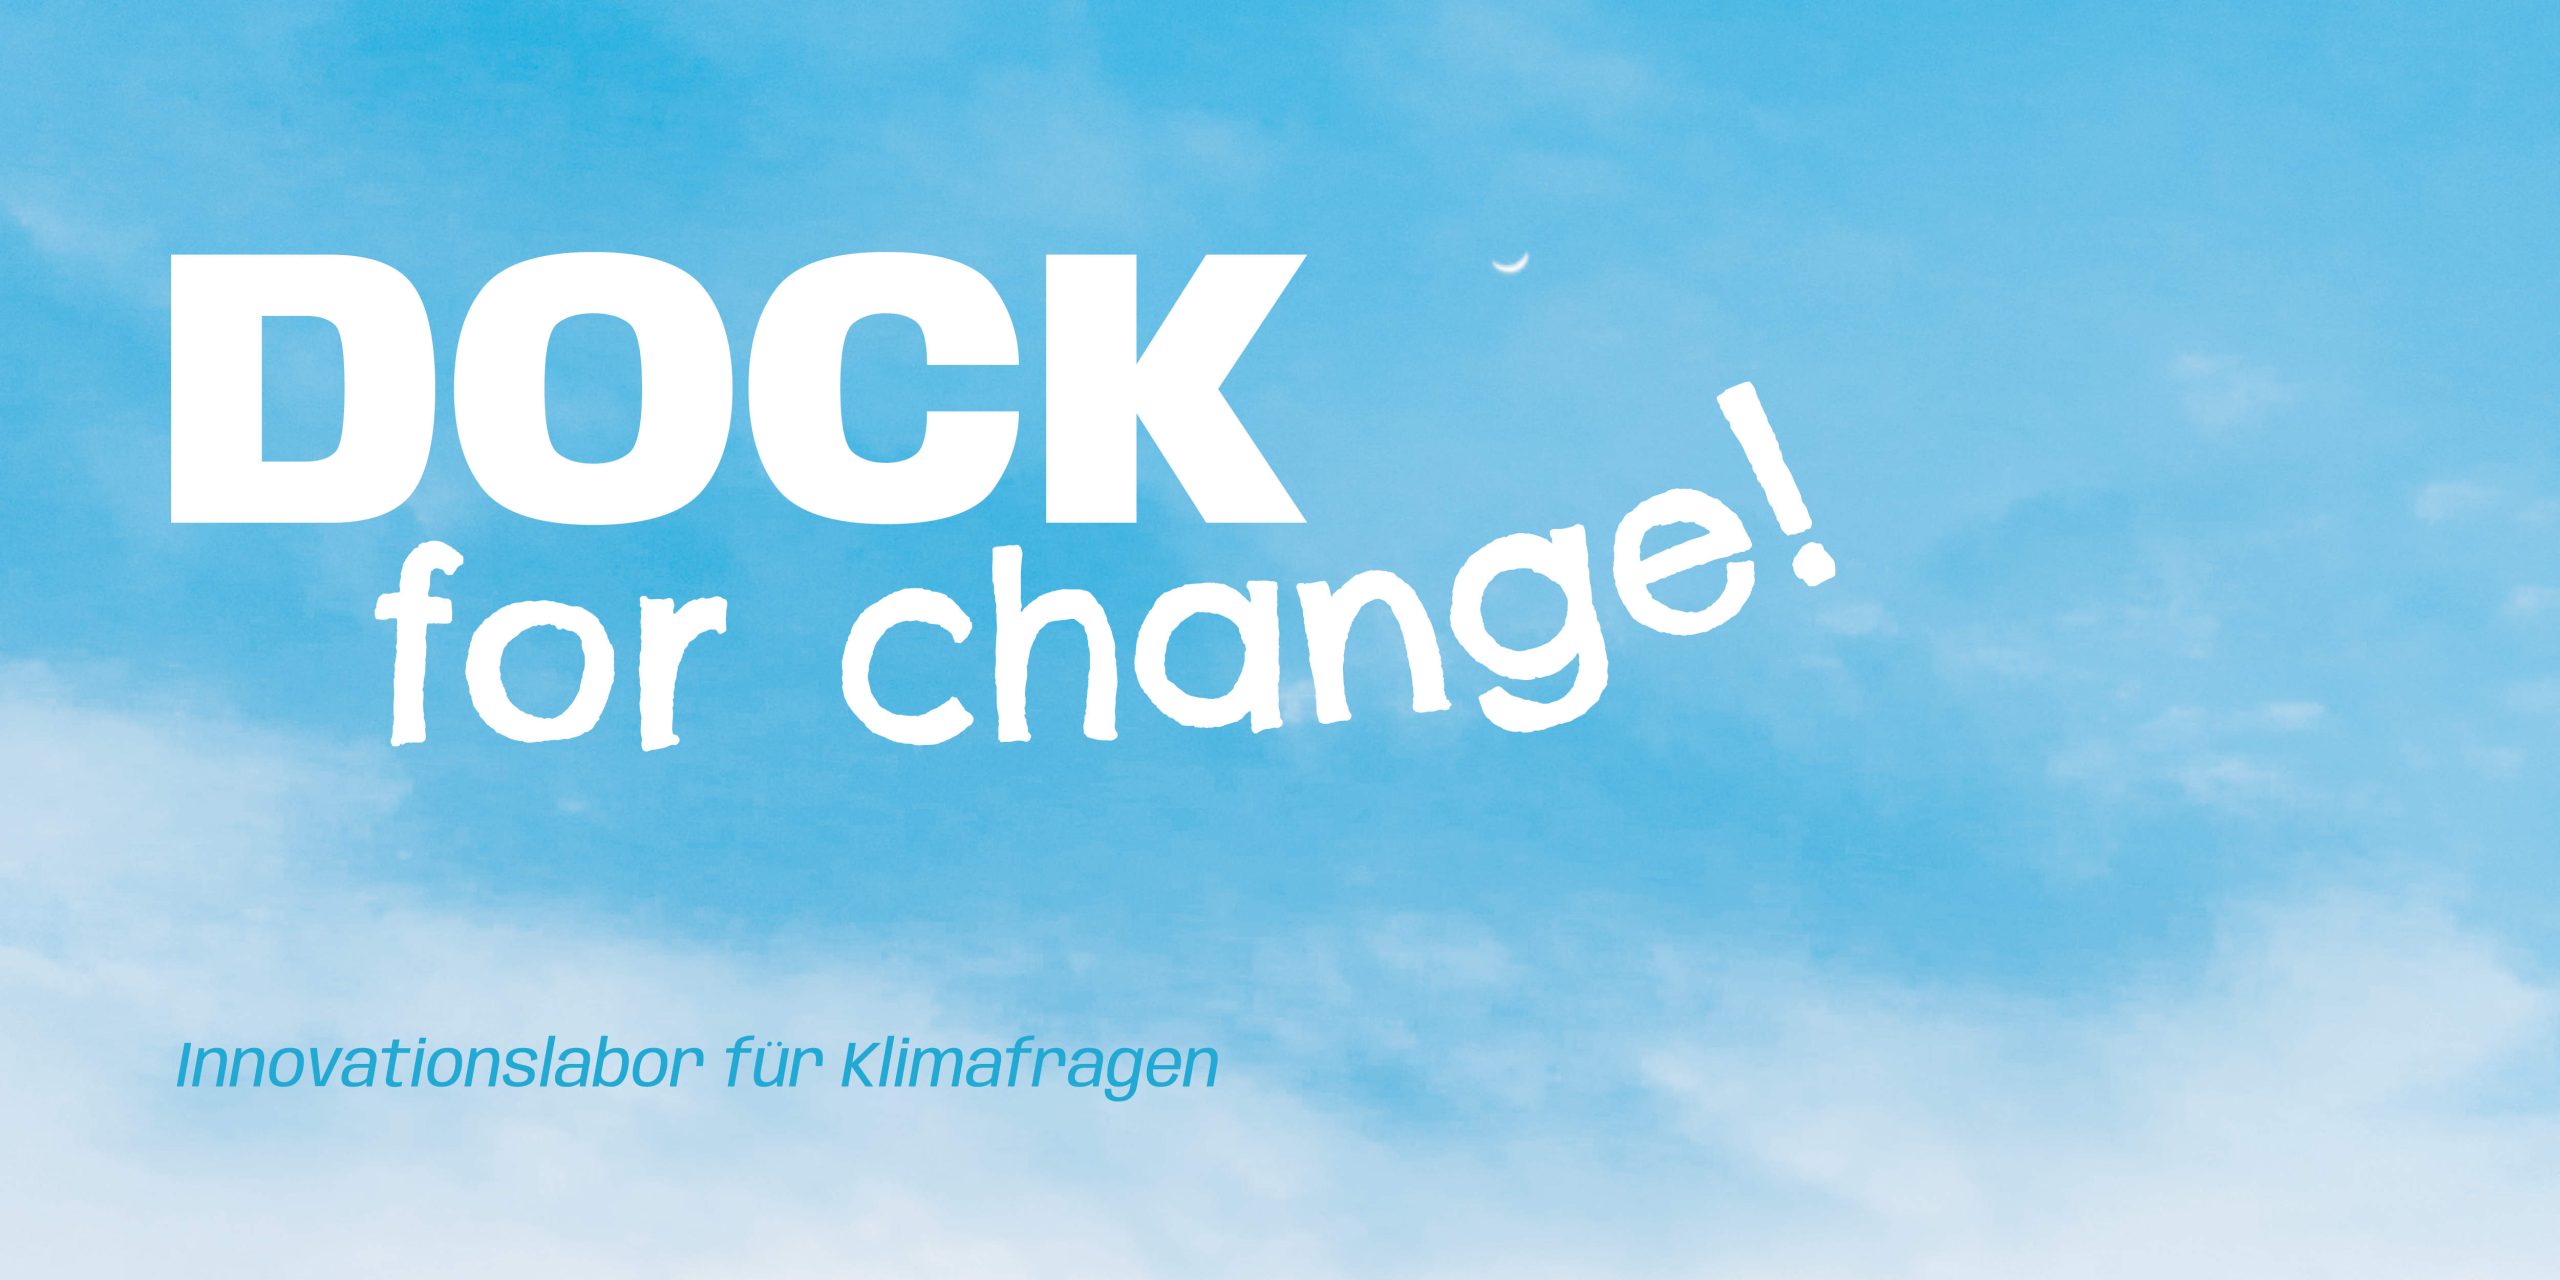 Sujet Dock for Change! Innovationslabor für Klimafragen